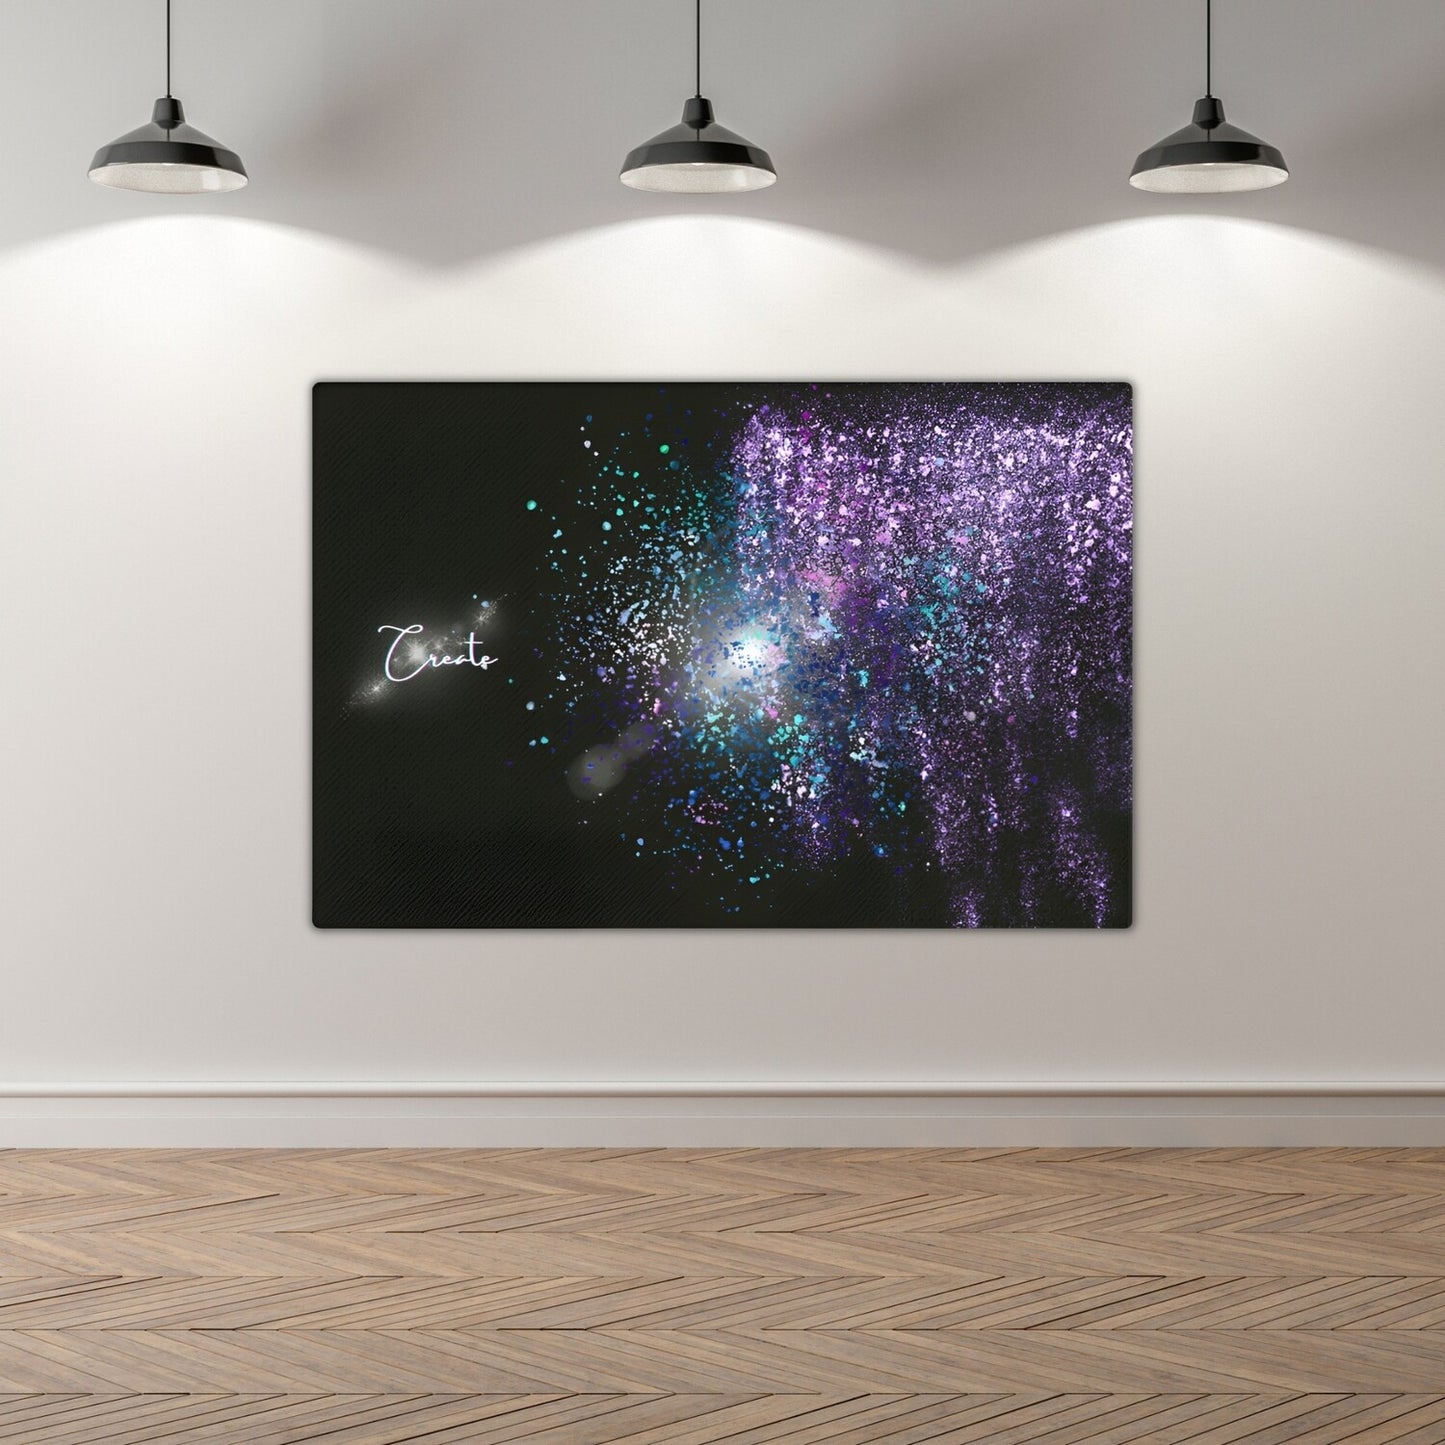 Creative Modern Wall Art Thin Canvas: "Create the Universe"